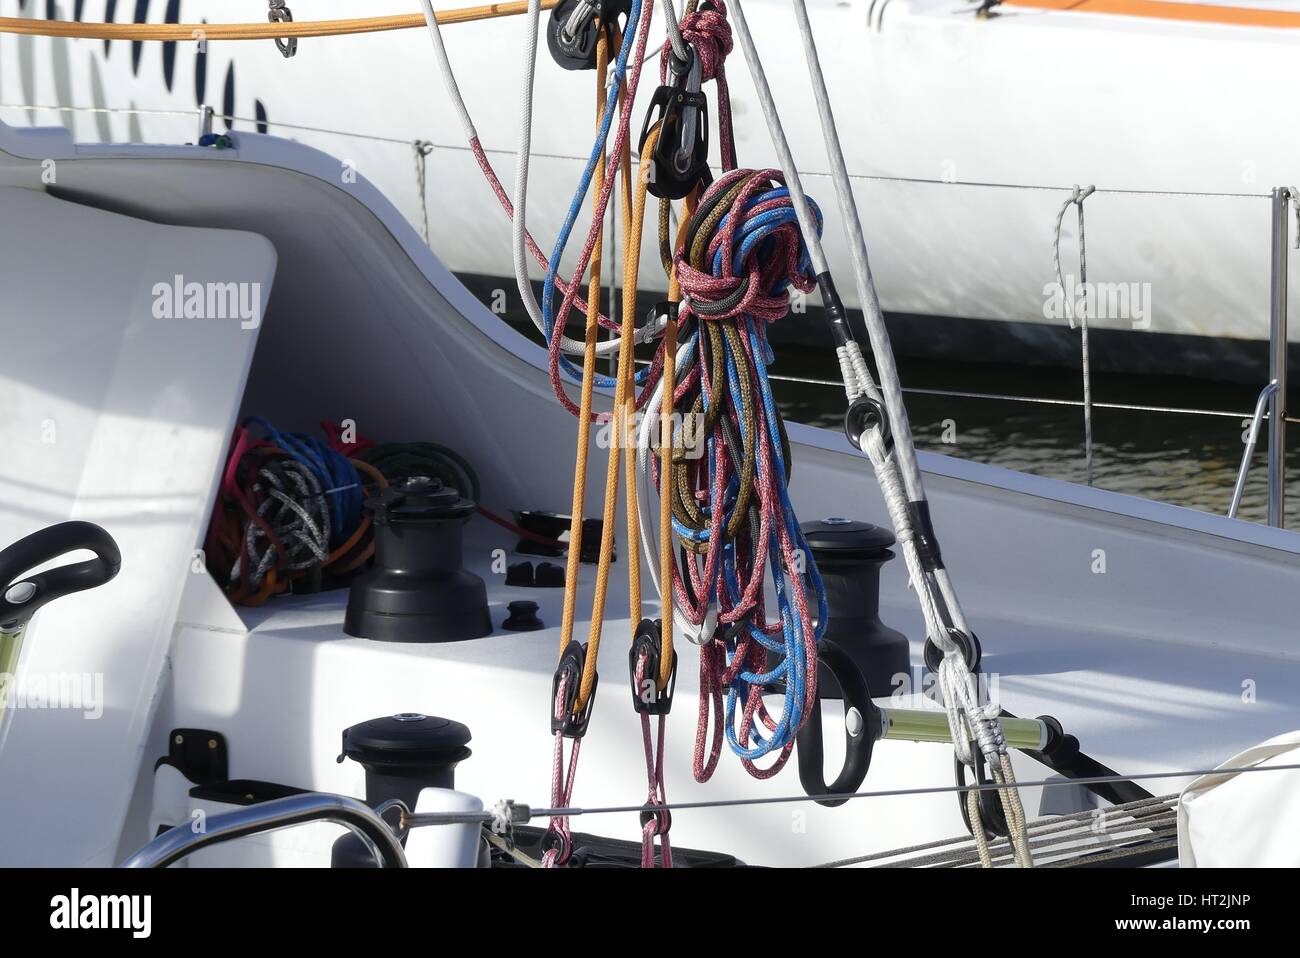 Détails du montage des cordes suspendues à bord d'Ocean racer bateau à voile Banque D'Images